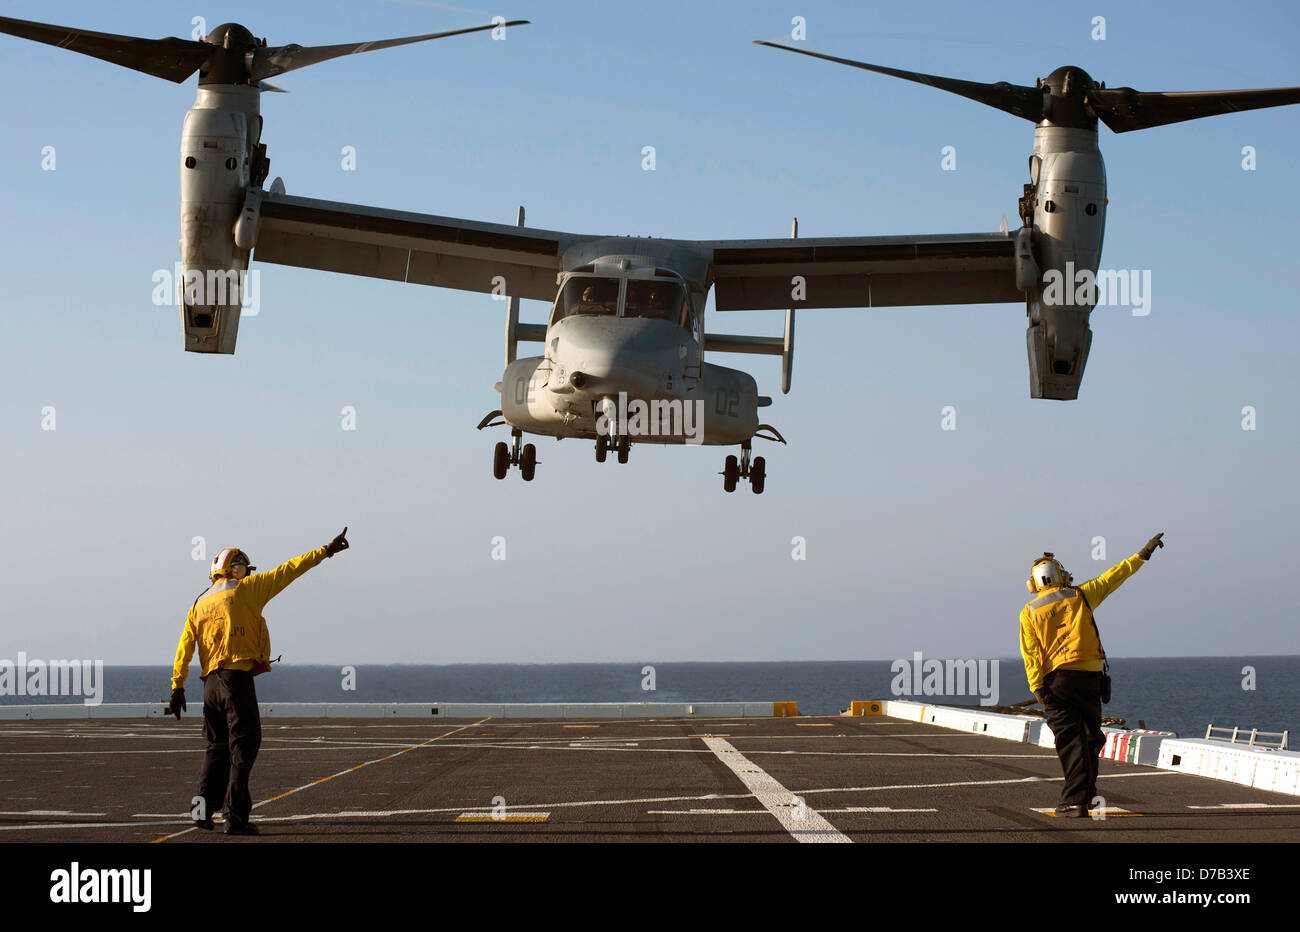 US Navy Aviation Boatswains Mates dirige el lanzamiento de una MV-22 Osprey aeronaves de rotor basculante en la cubierta de vuelo del buque de transporte anfibio USS anclaje dock, el 24 de abril de 2013 en el Océano Pacífico. Foto de stock